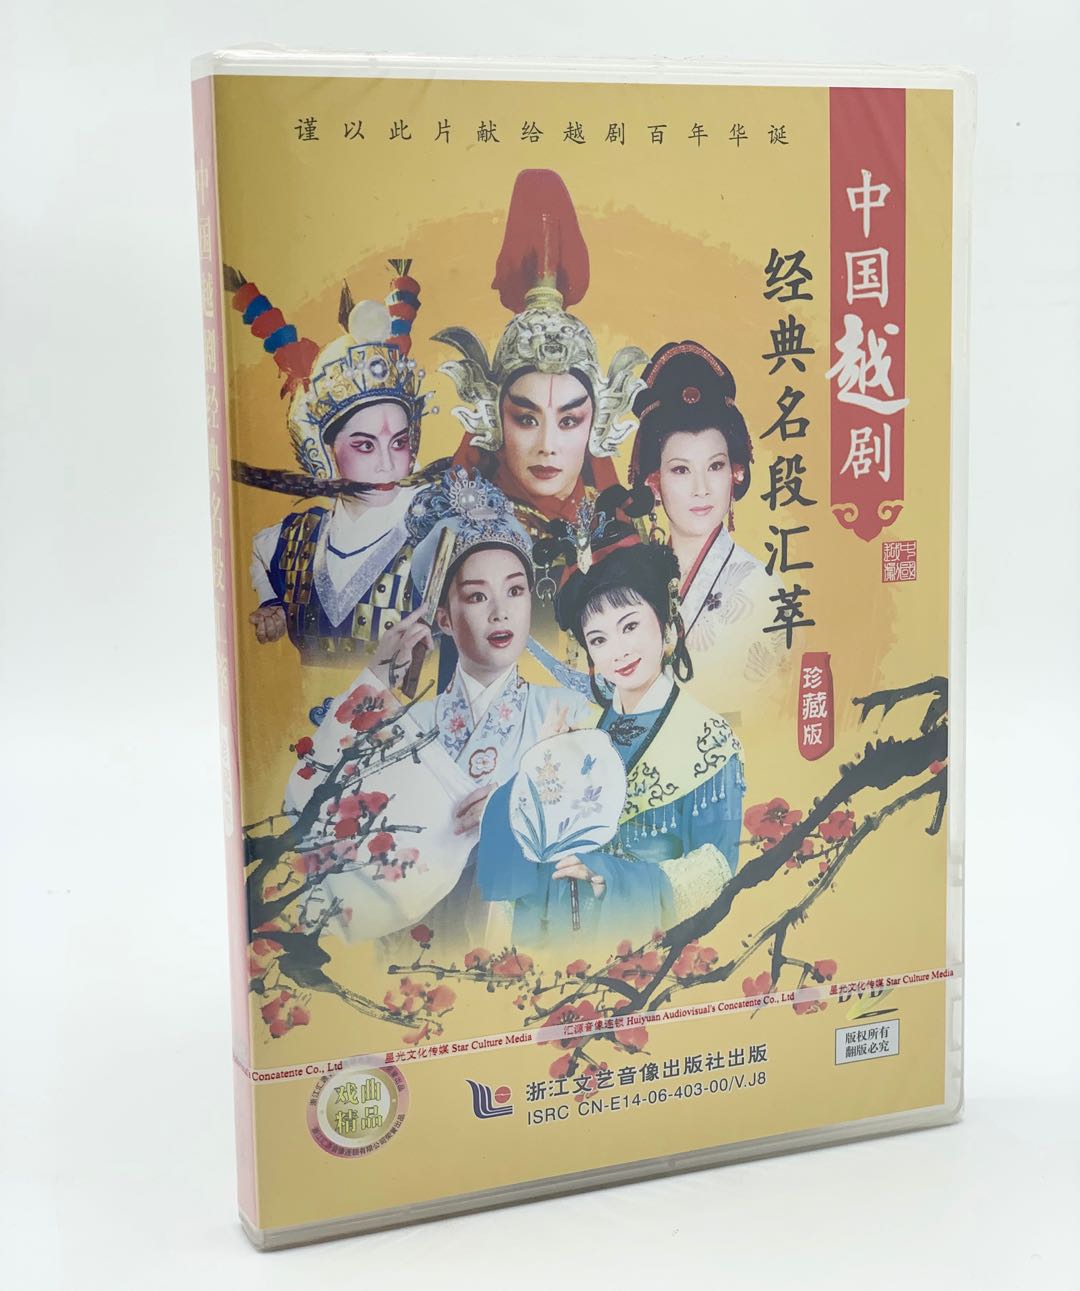 正版中国越剧DVD 经典名段汇萃 珍藏版  经典越剧选段DVD光盘